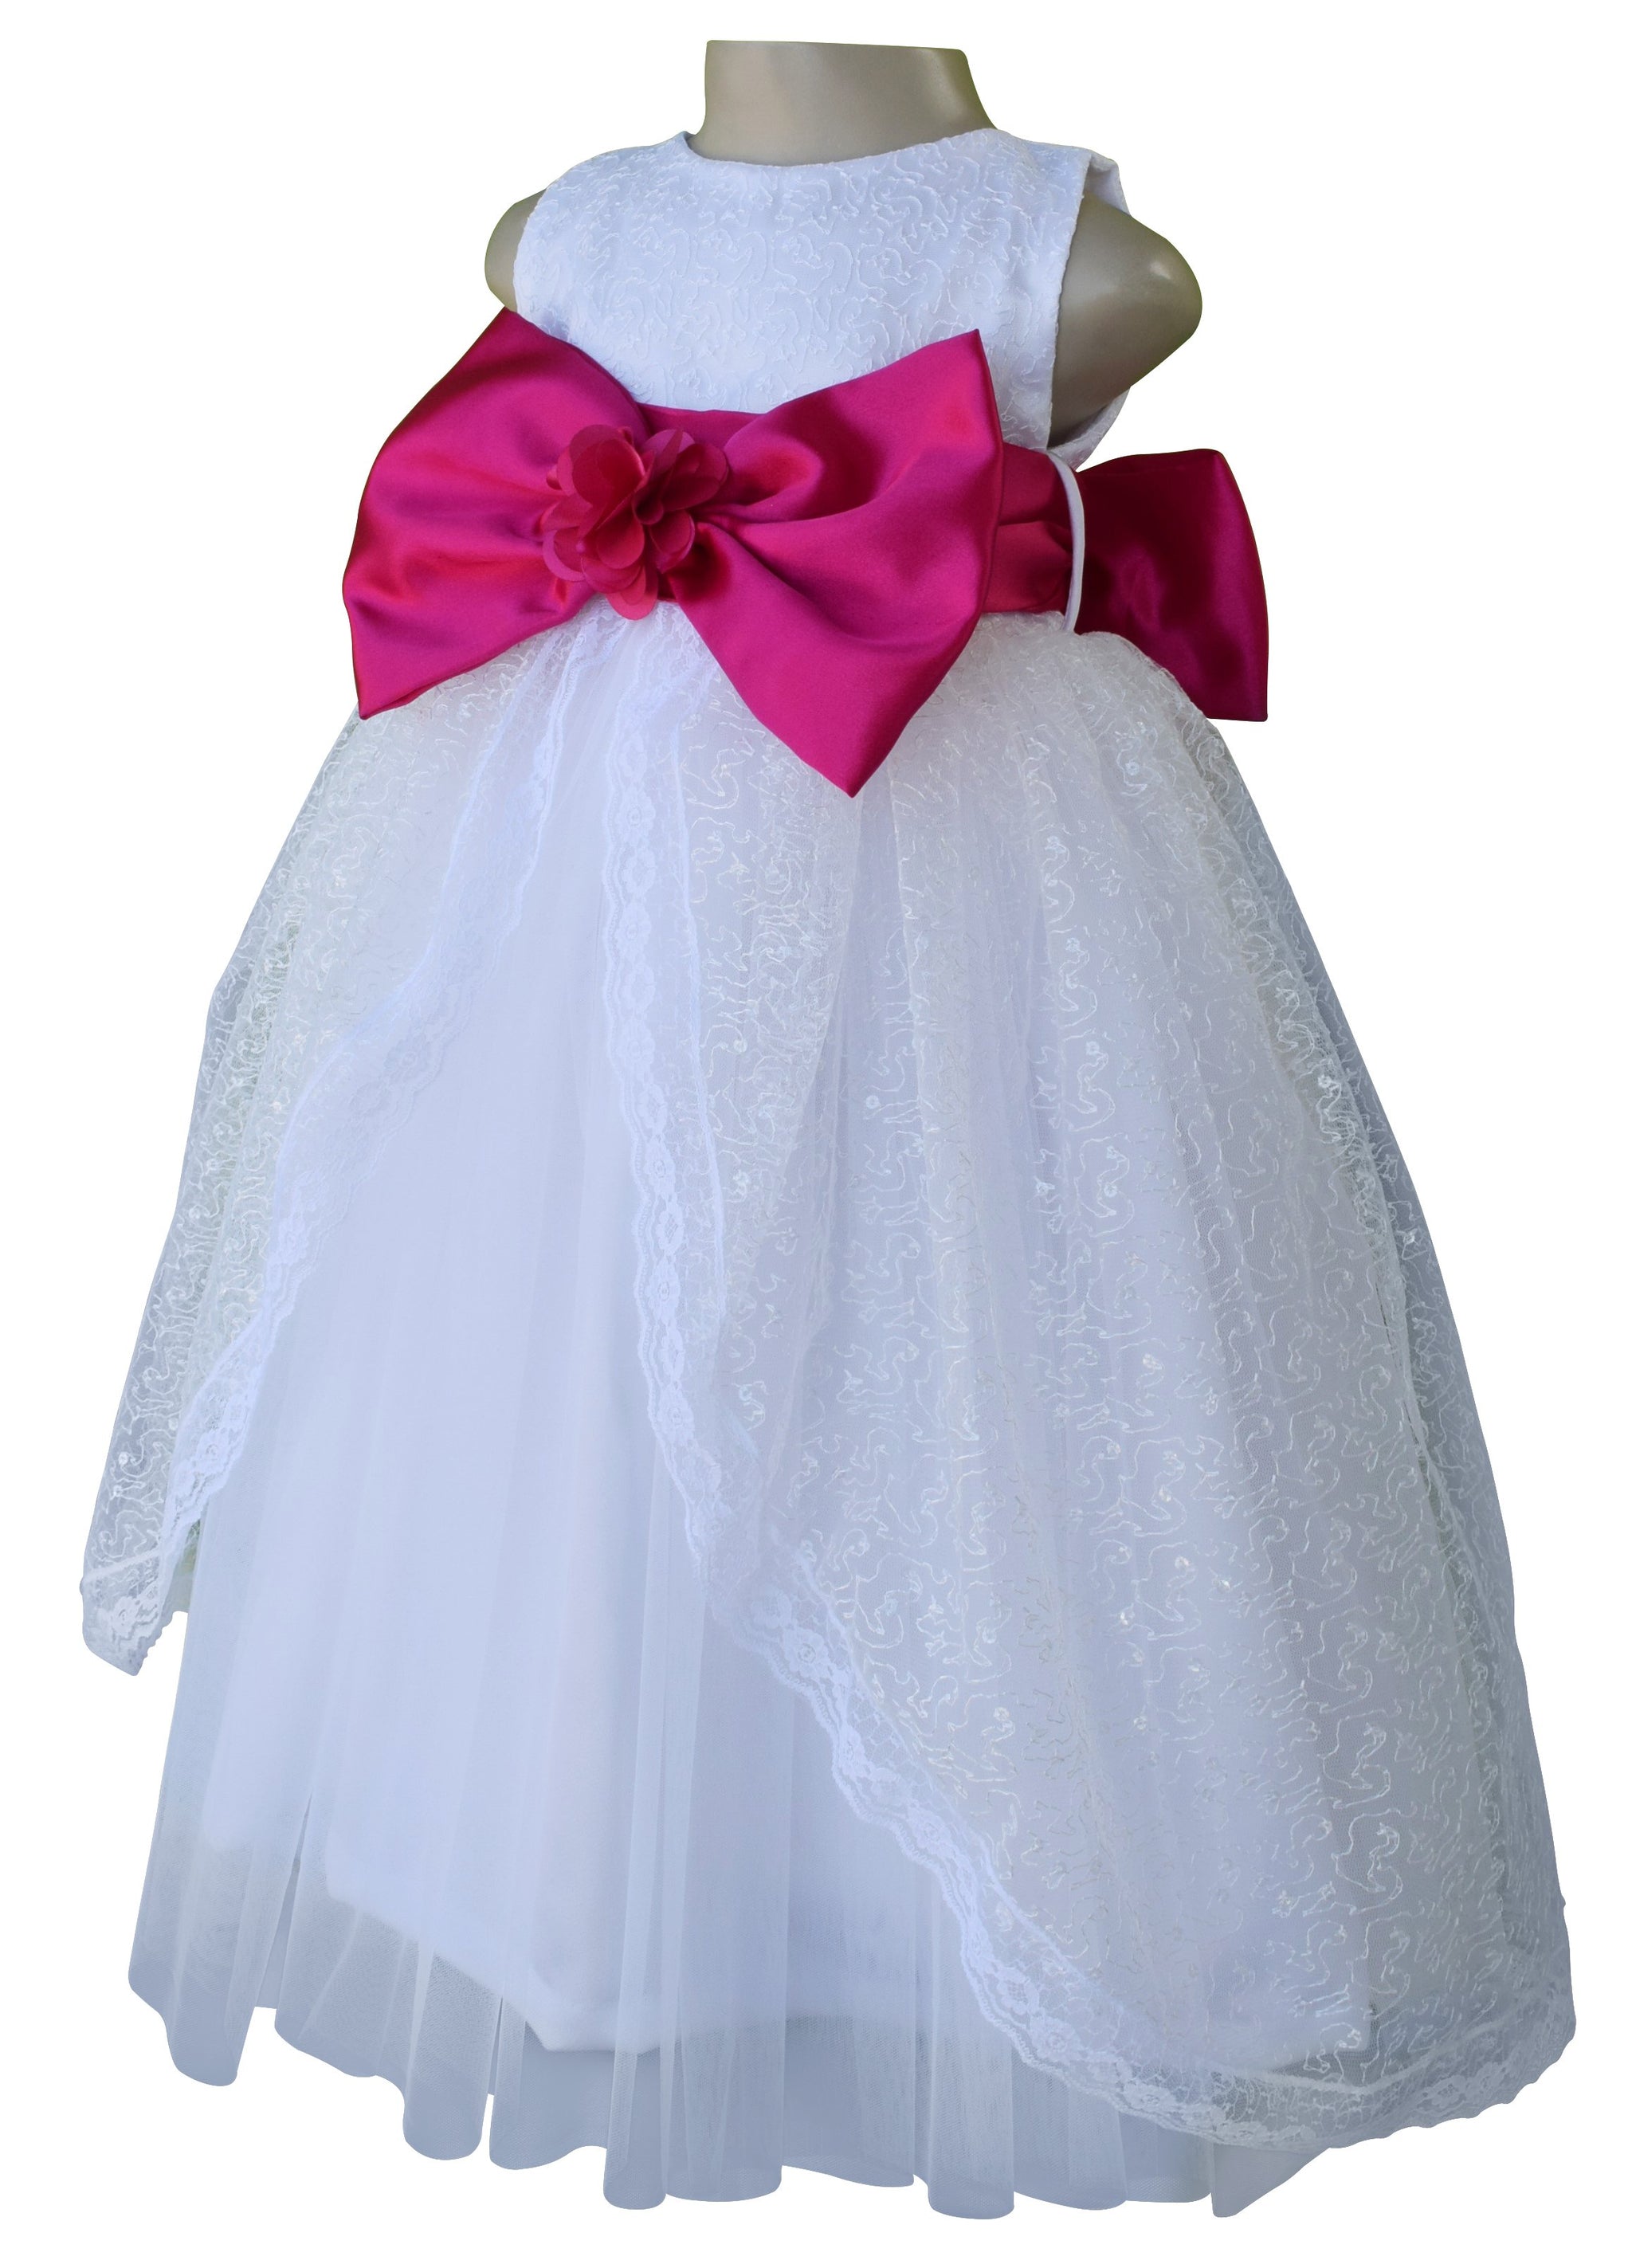 Buy Girls party wear dresses online|birthday dresses|dresses for girls